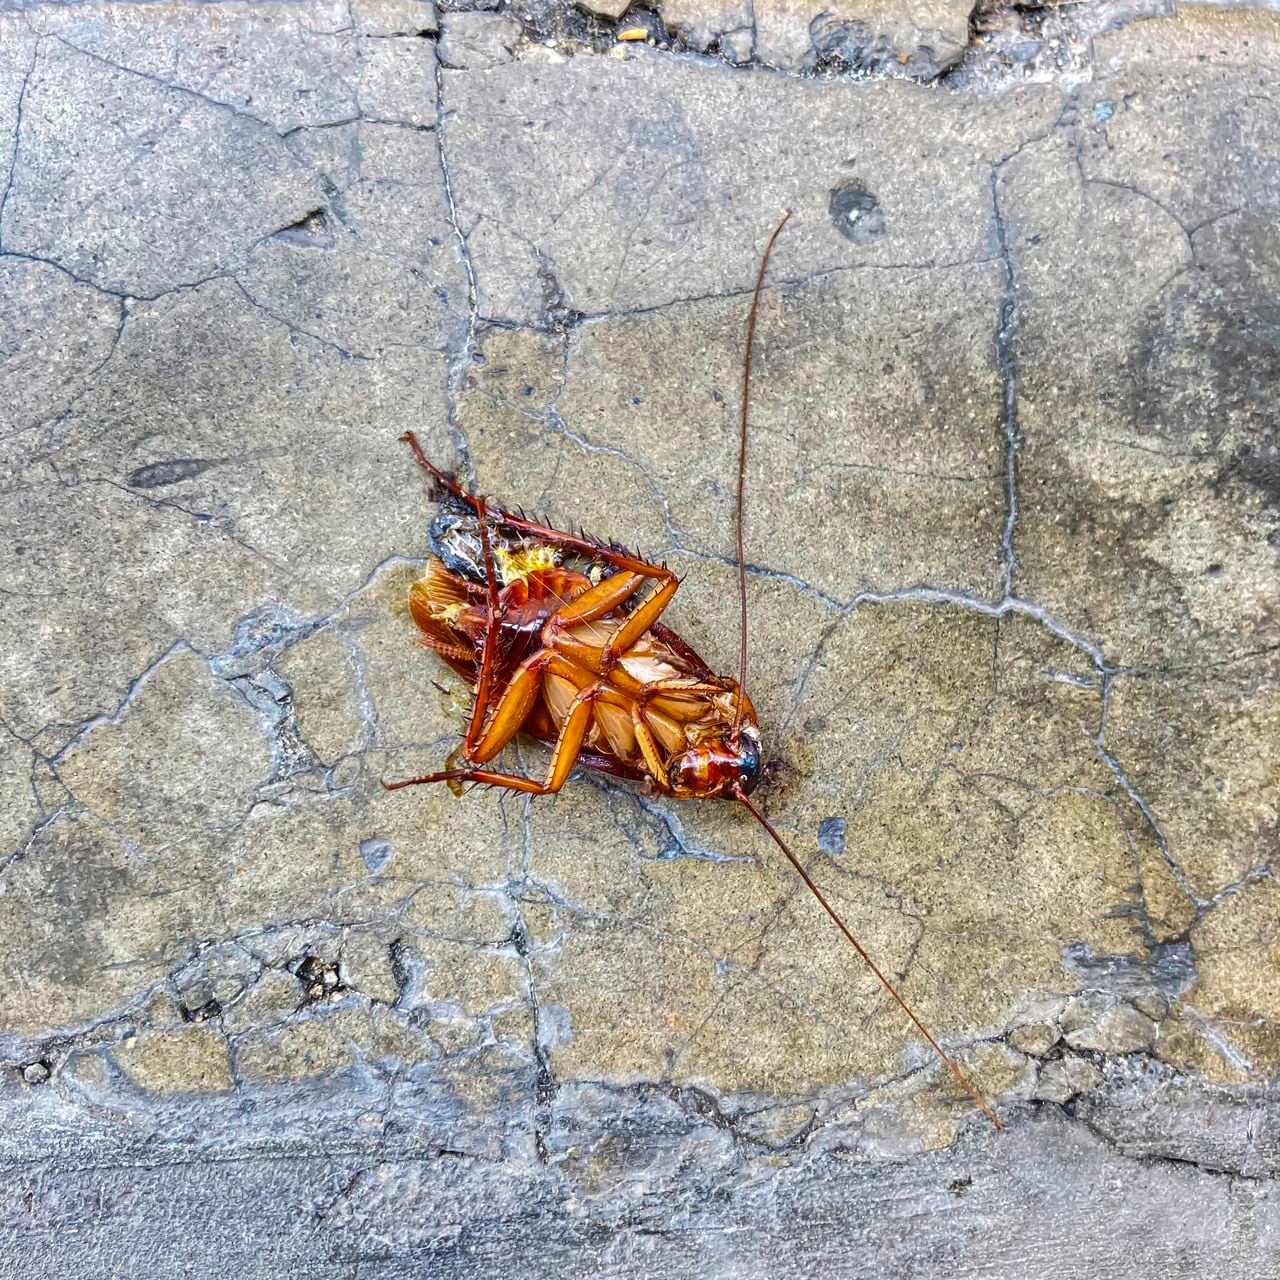 Dead cockroach on the street of Caracas city